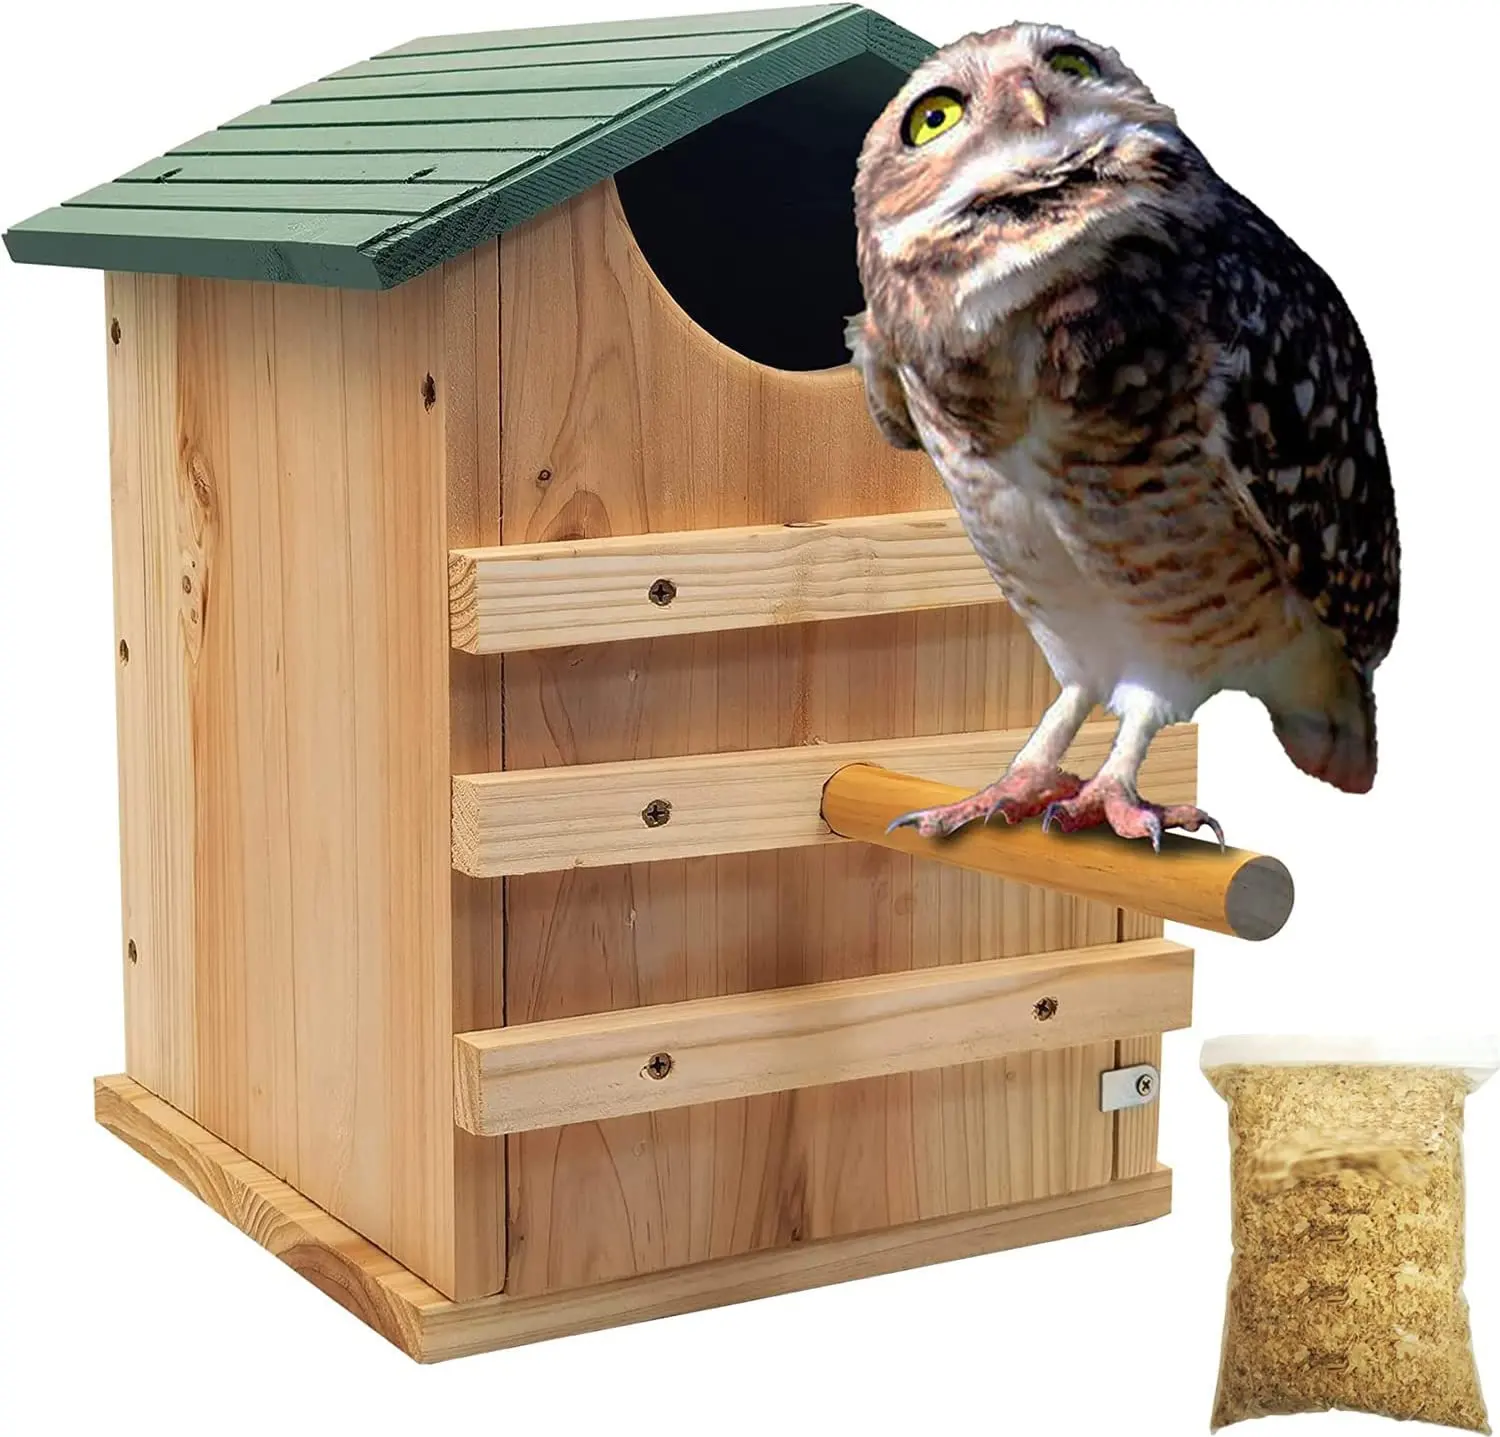 Personalizzato all'ingrosso personalizzato all'ingrosso tetto verde casa per uccelli facile da montare voliera in legno fatto a mano nido d'uccello